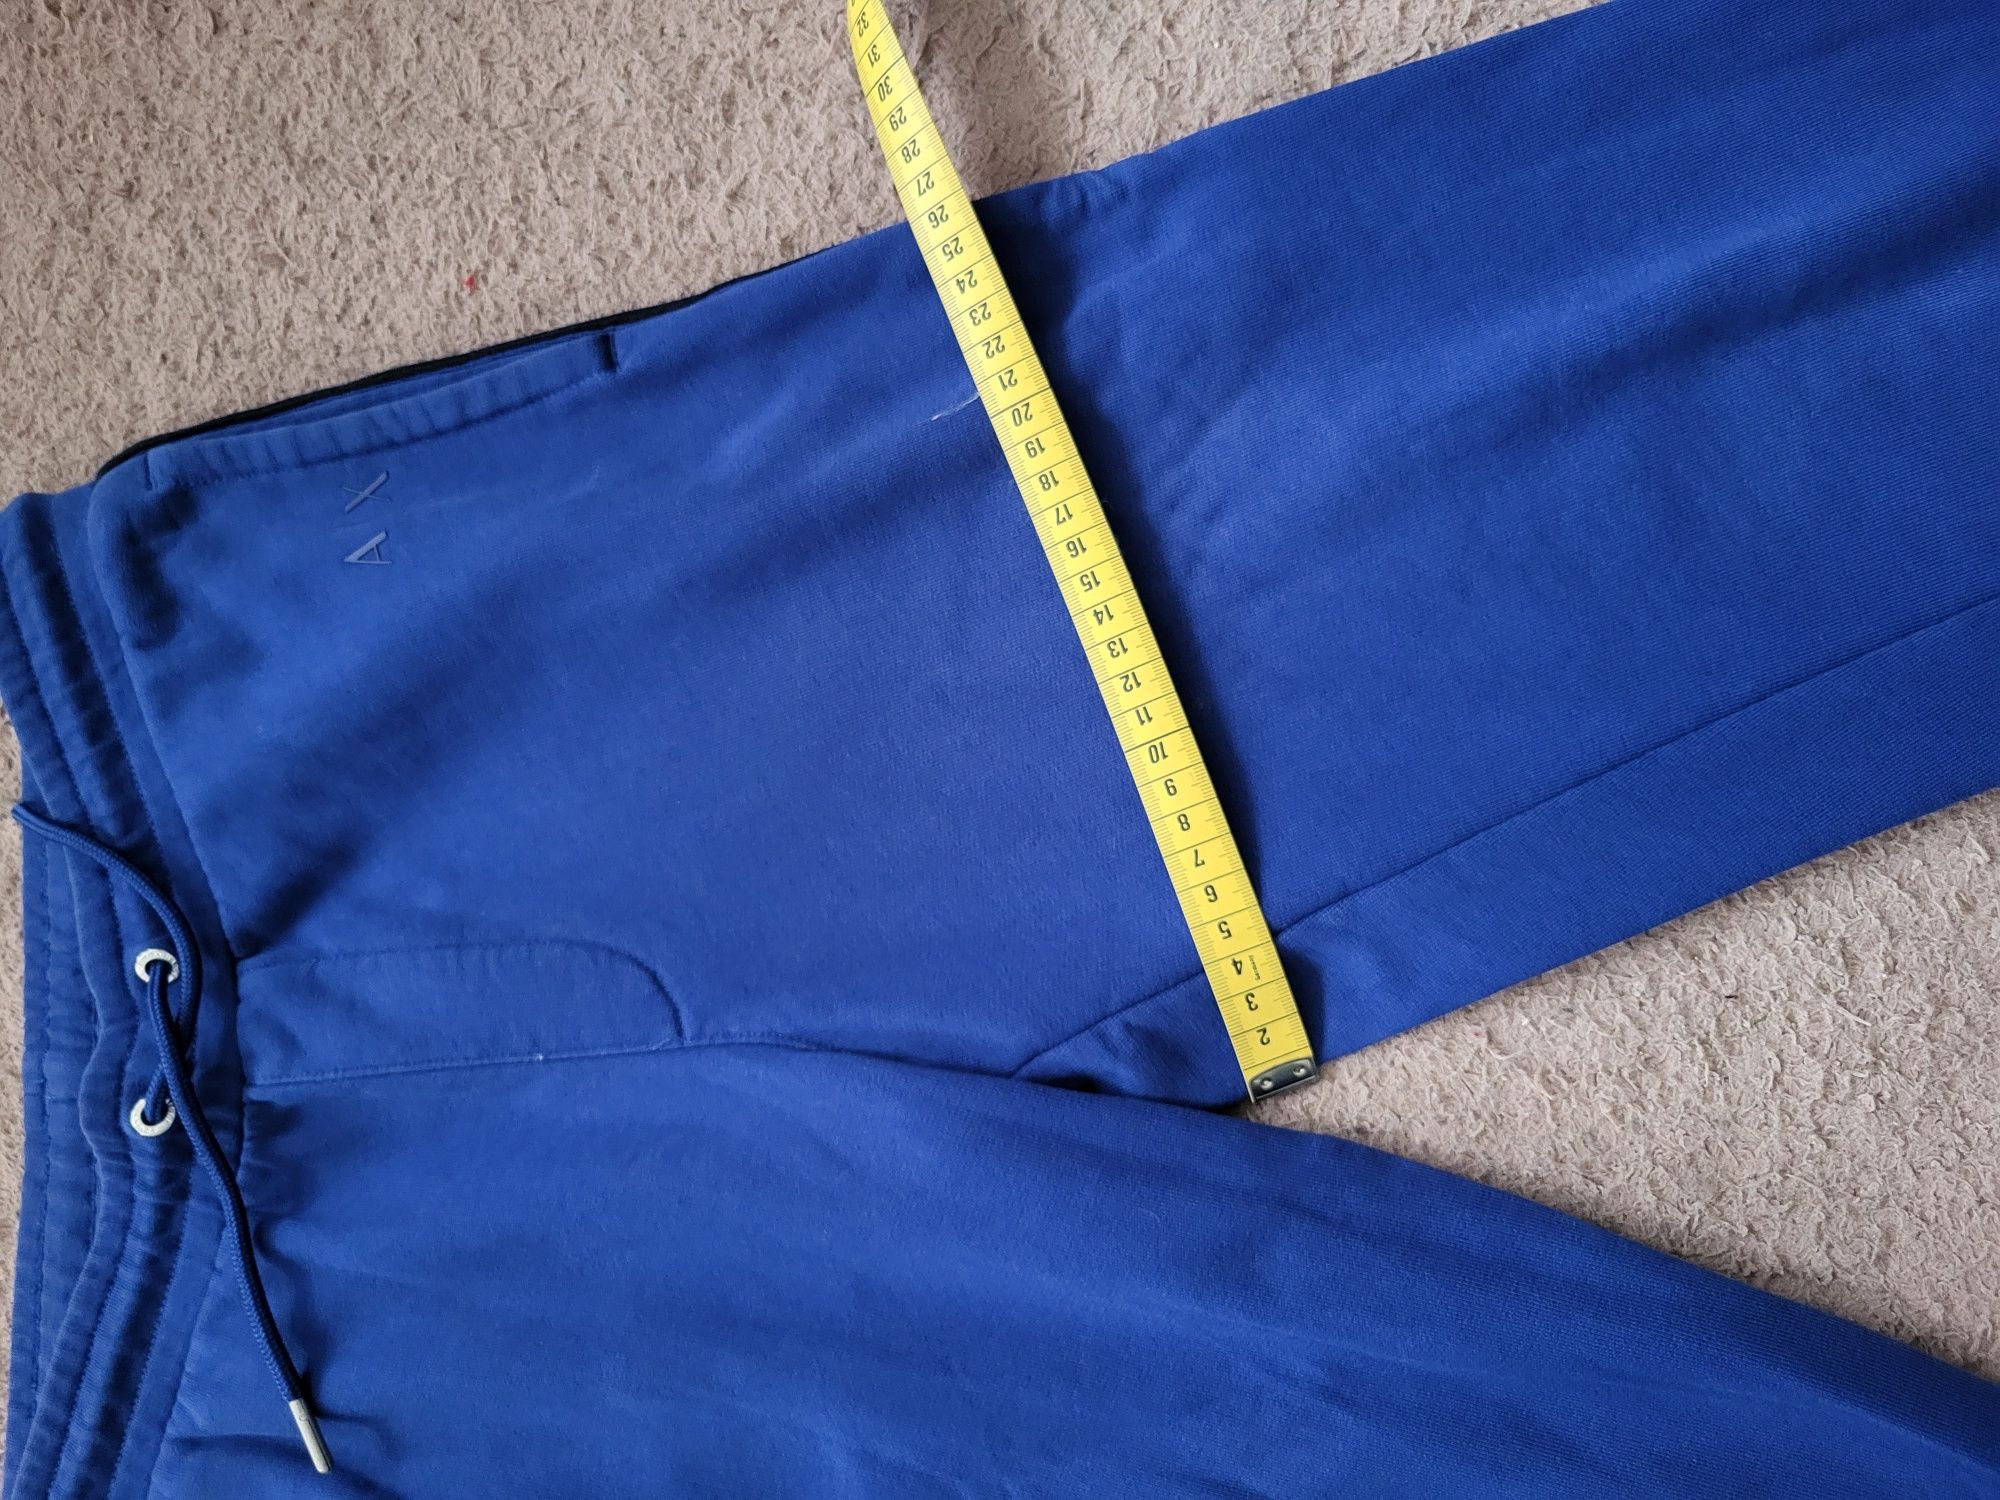 Oryginalne niebieskie spodnie dresowe Armani Exchange, rozm. M